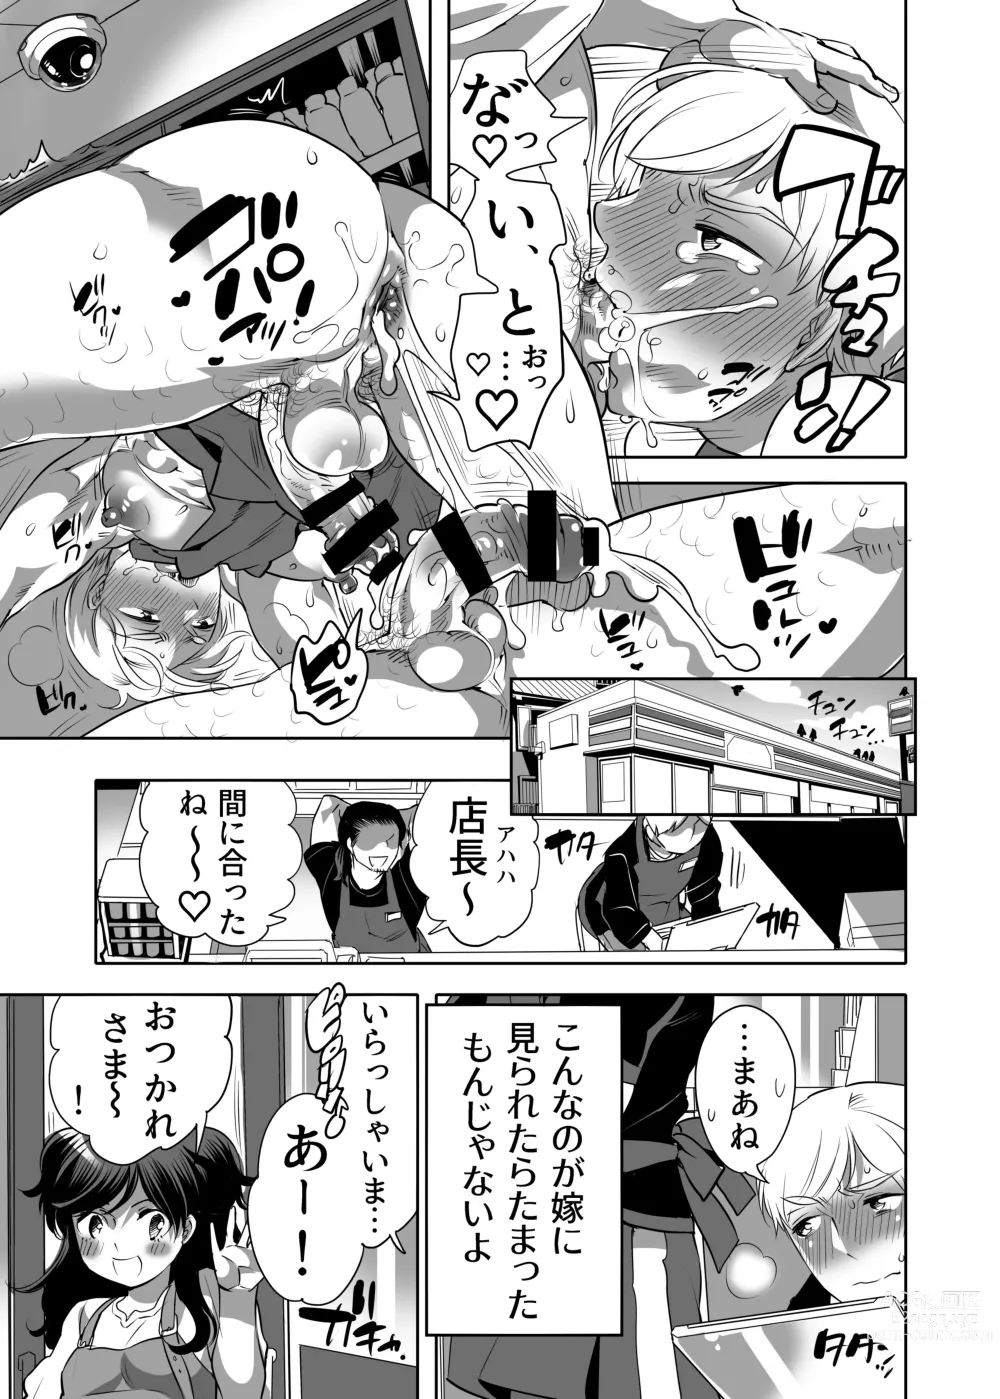 Page 5 of manga Abuso OK Prisionero Niño